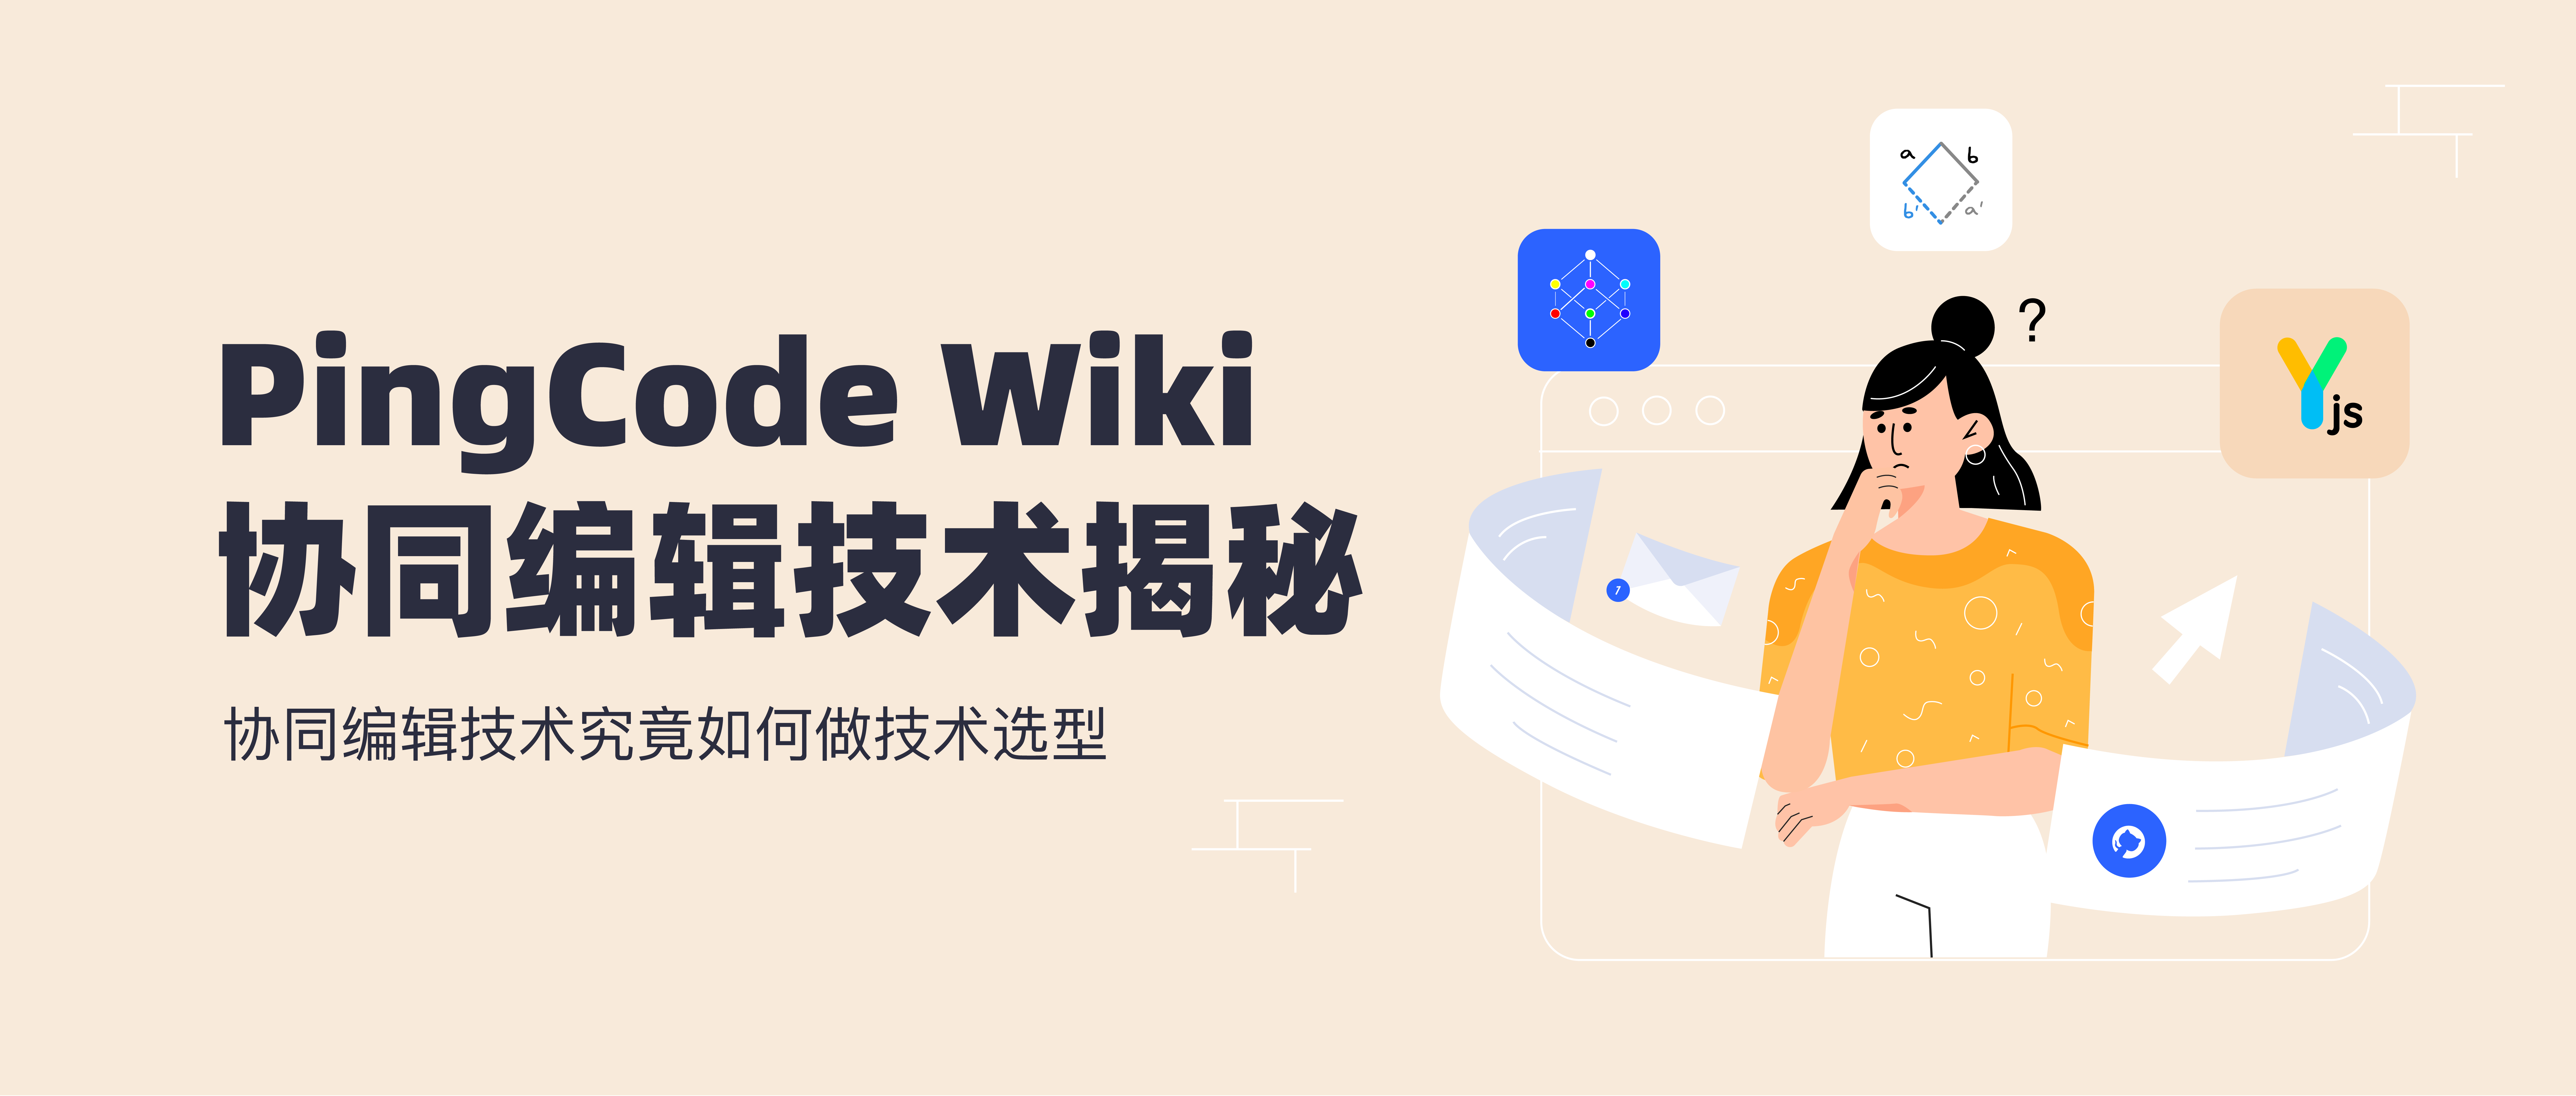 PingCode Wiki 协同编辑技术揭秘